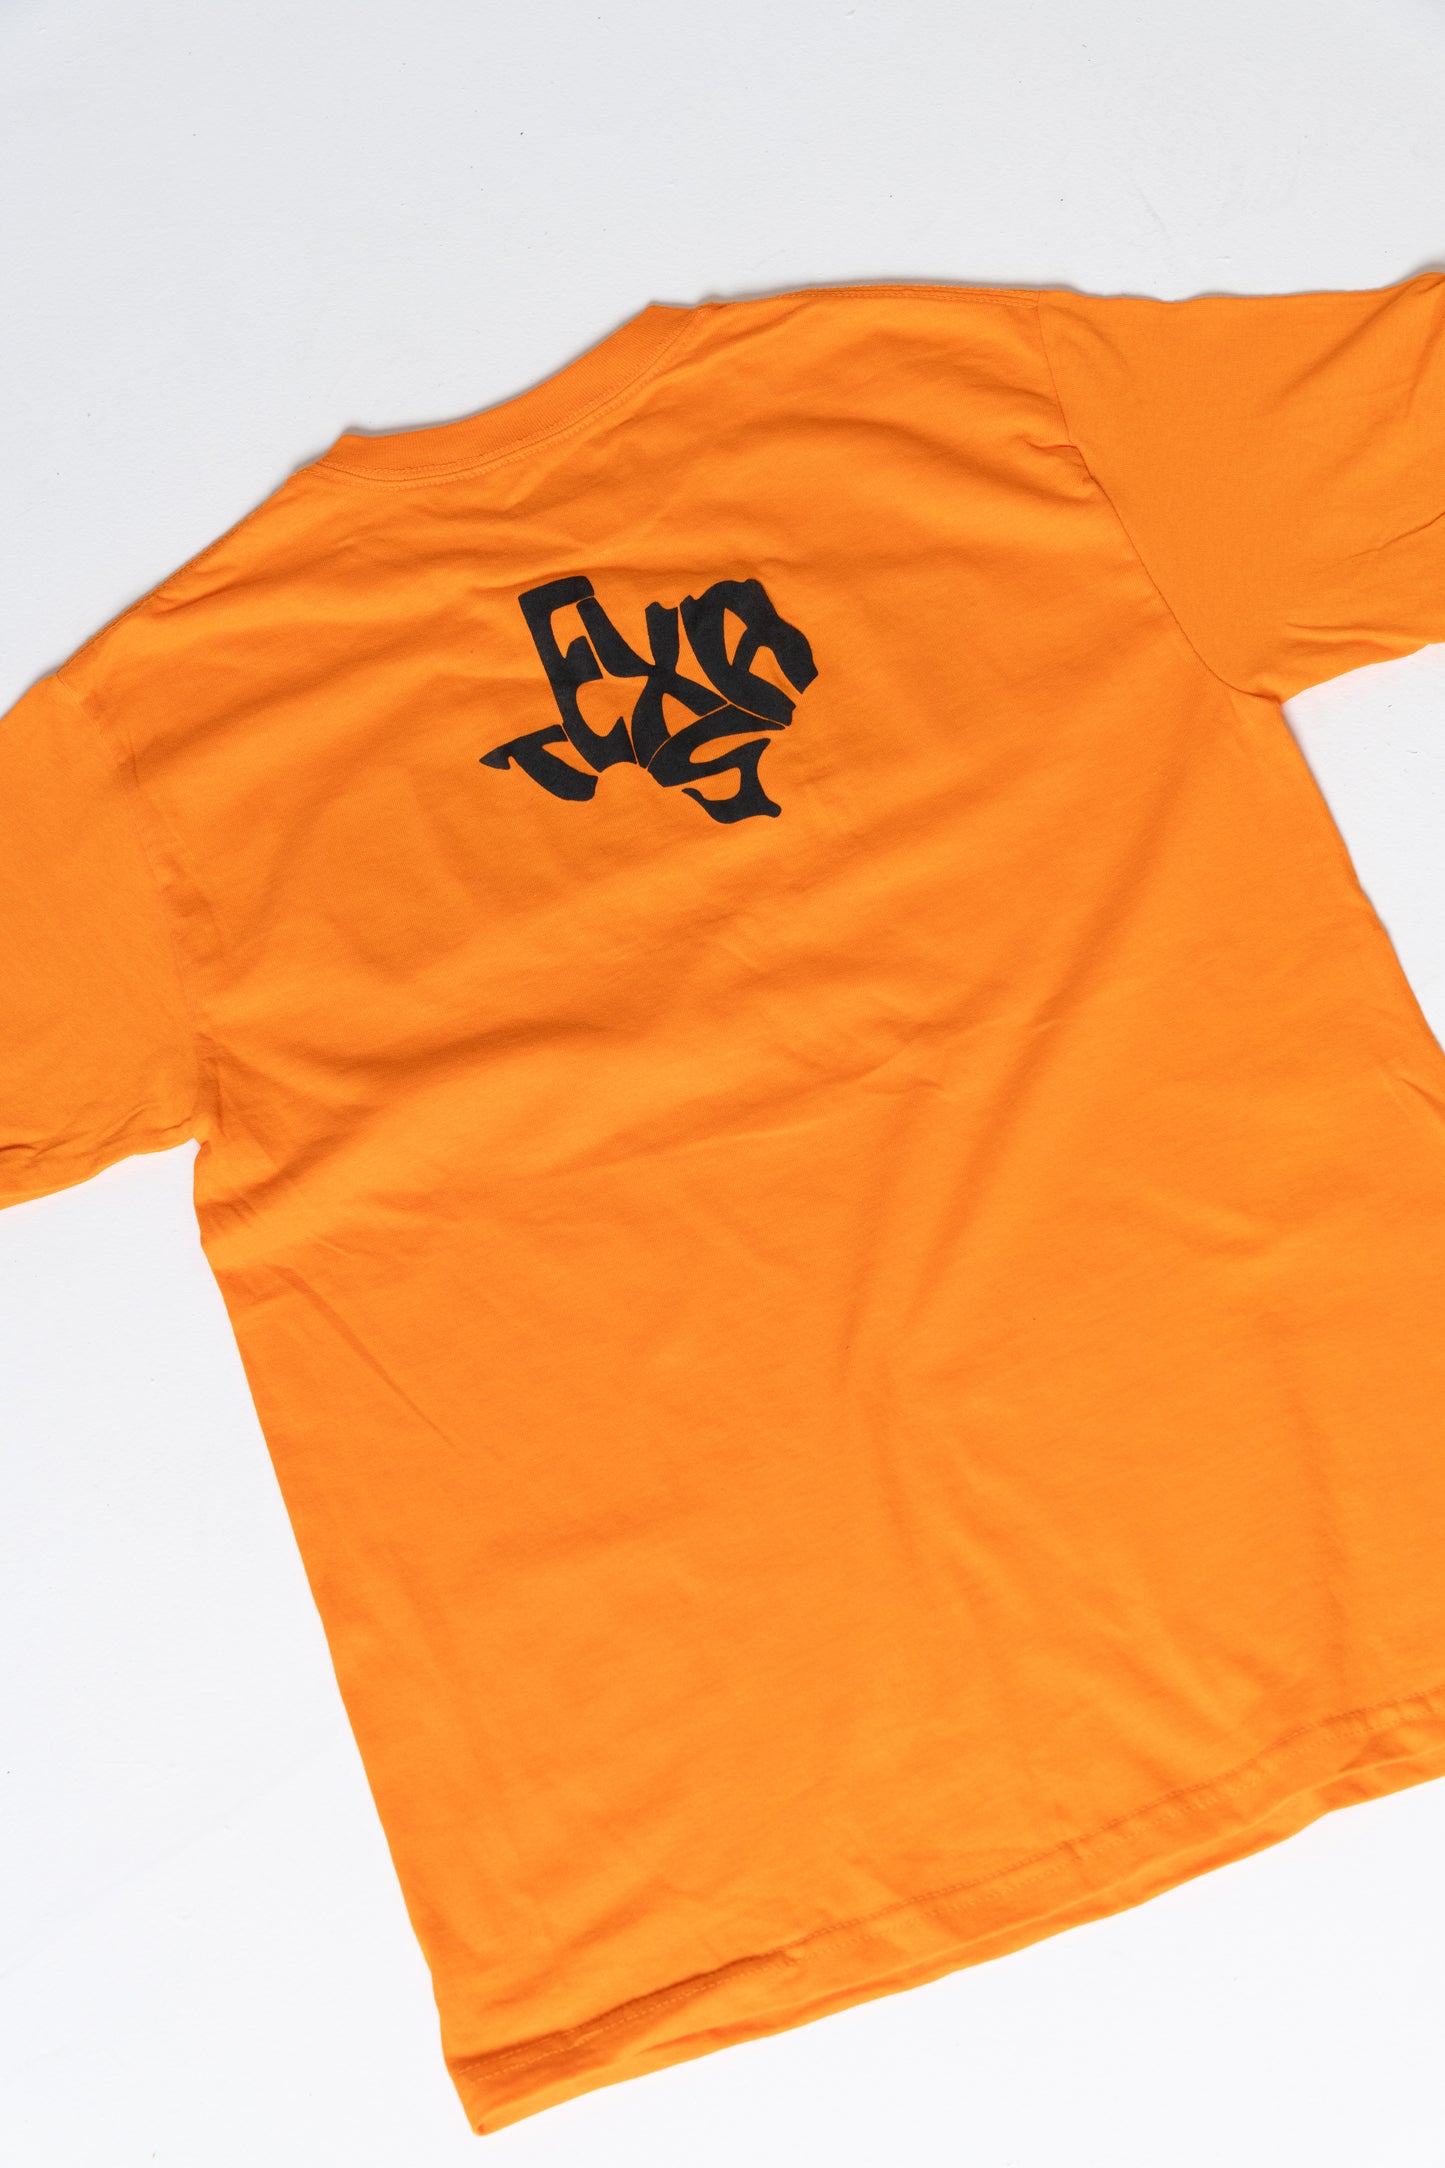 TXHSFB T-Shirt Orange/Black